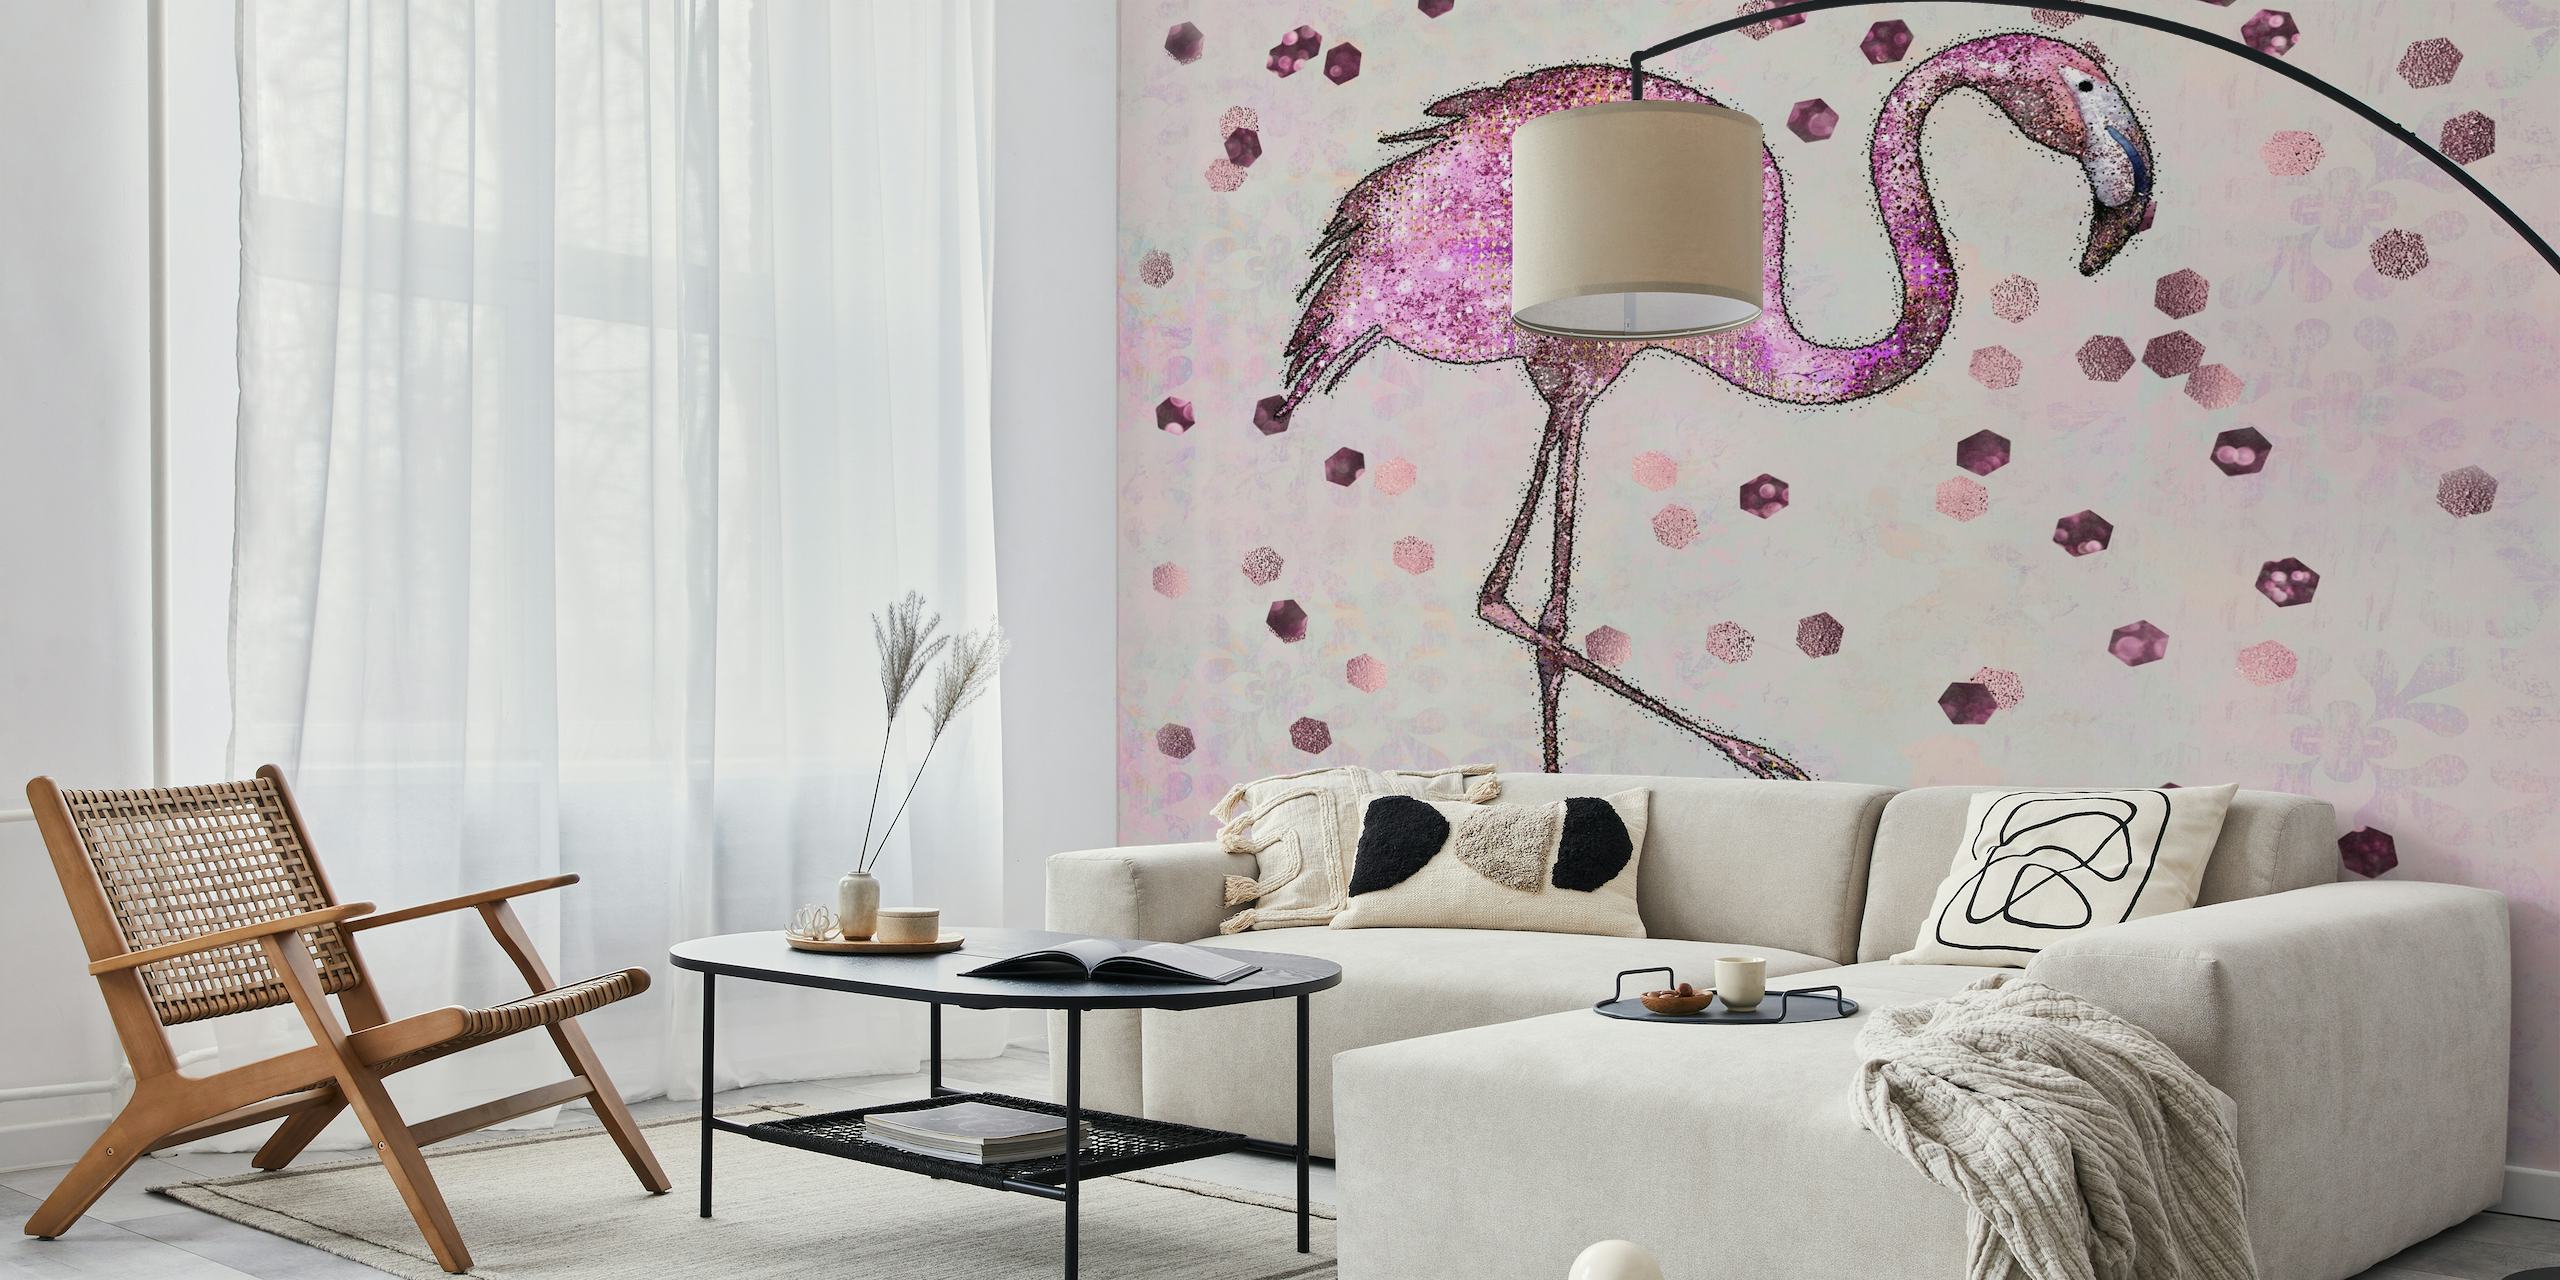 Glamorous Flamingo papel pintado